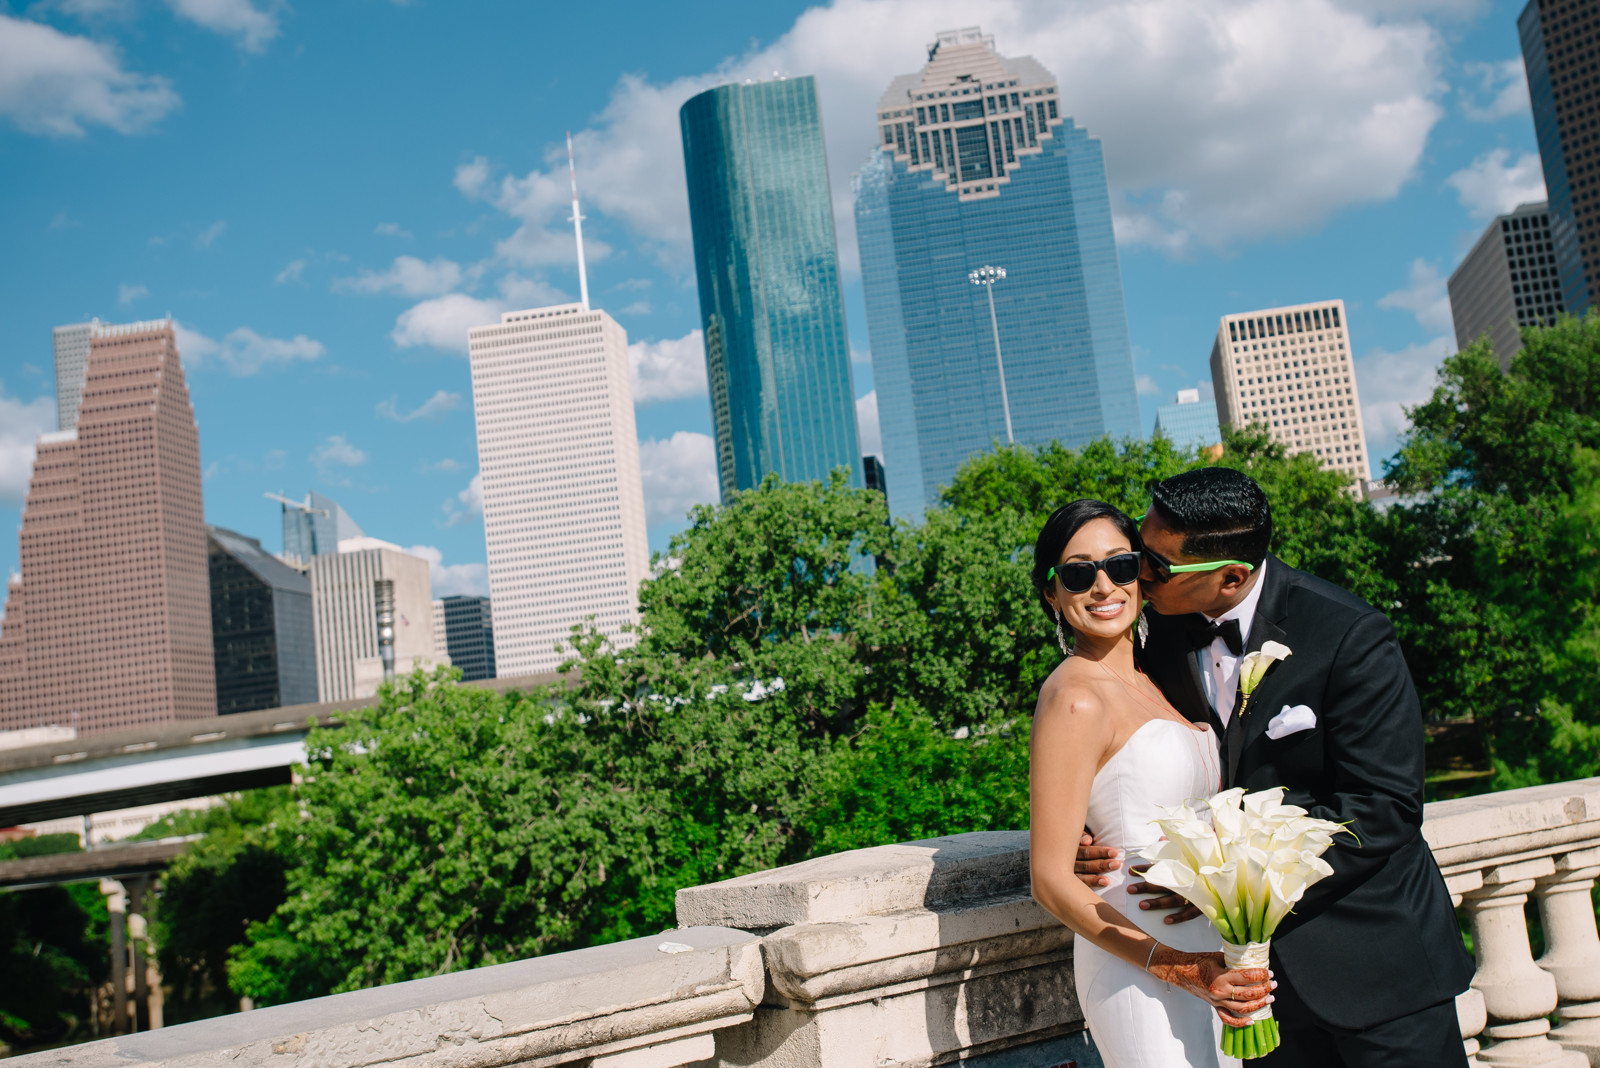 Westin Galleria Houston Wedding Reception Photos (53)